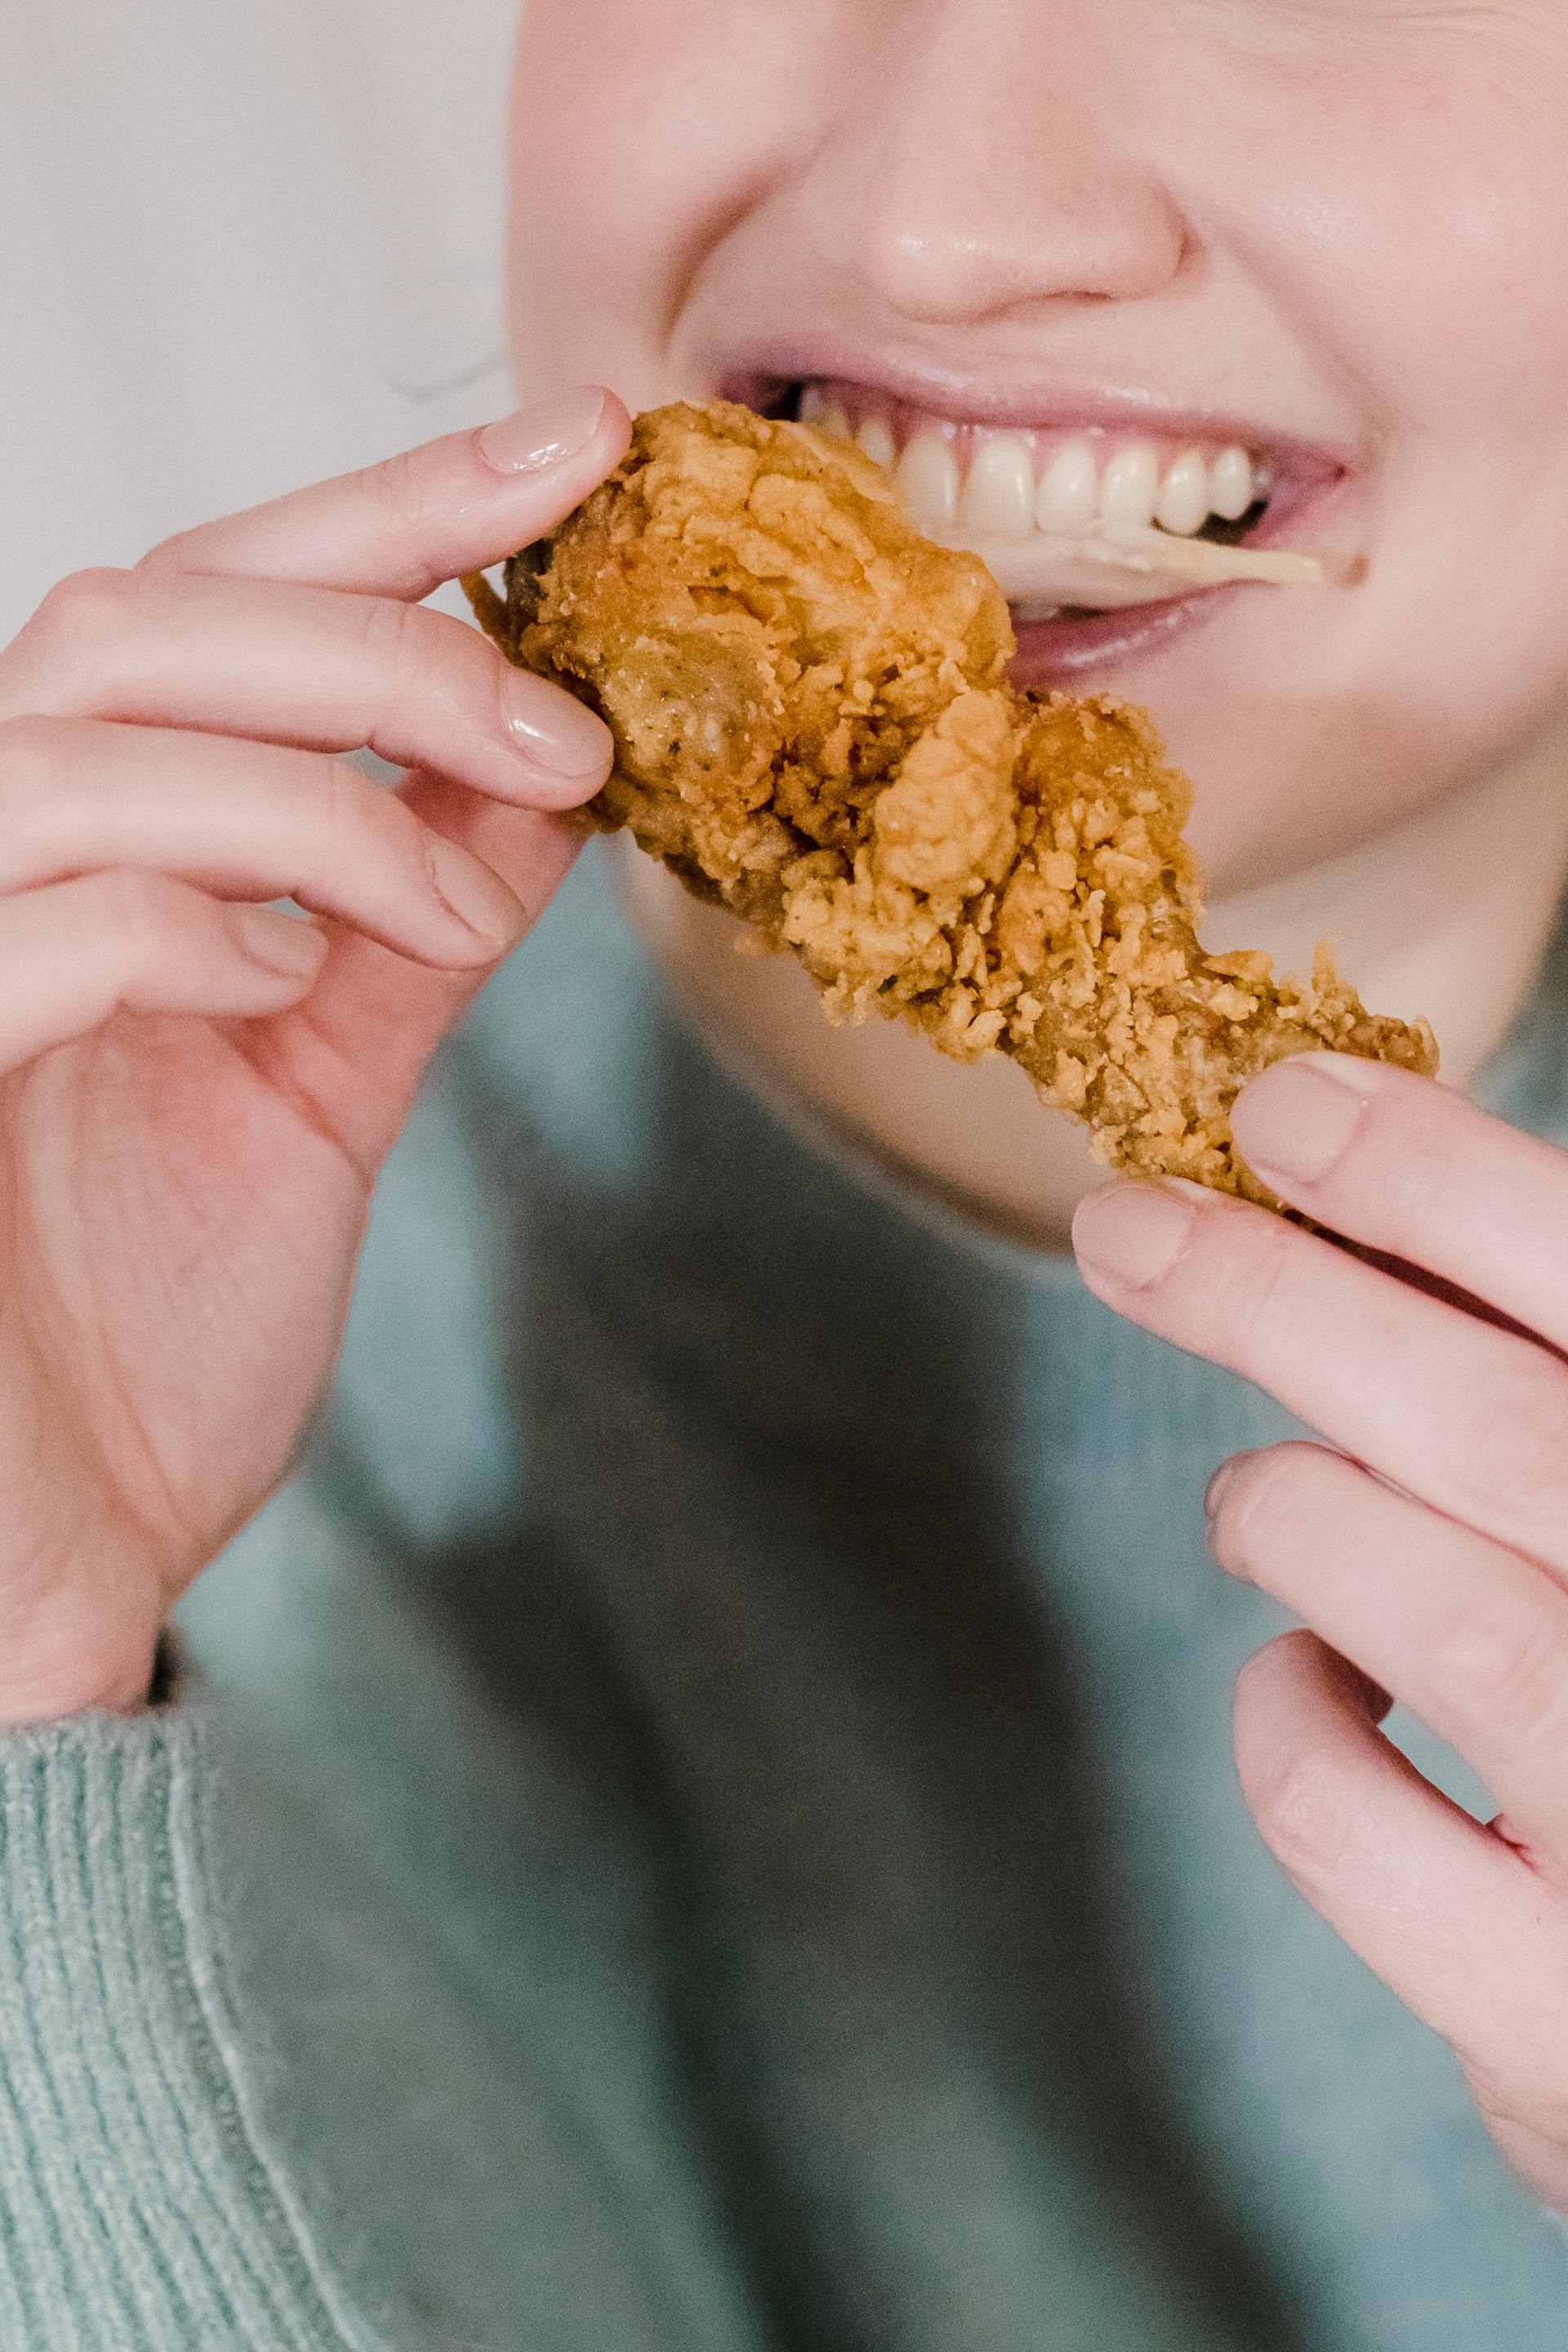 Une personne mangeant du poulet frit | Source : Pexels